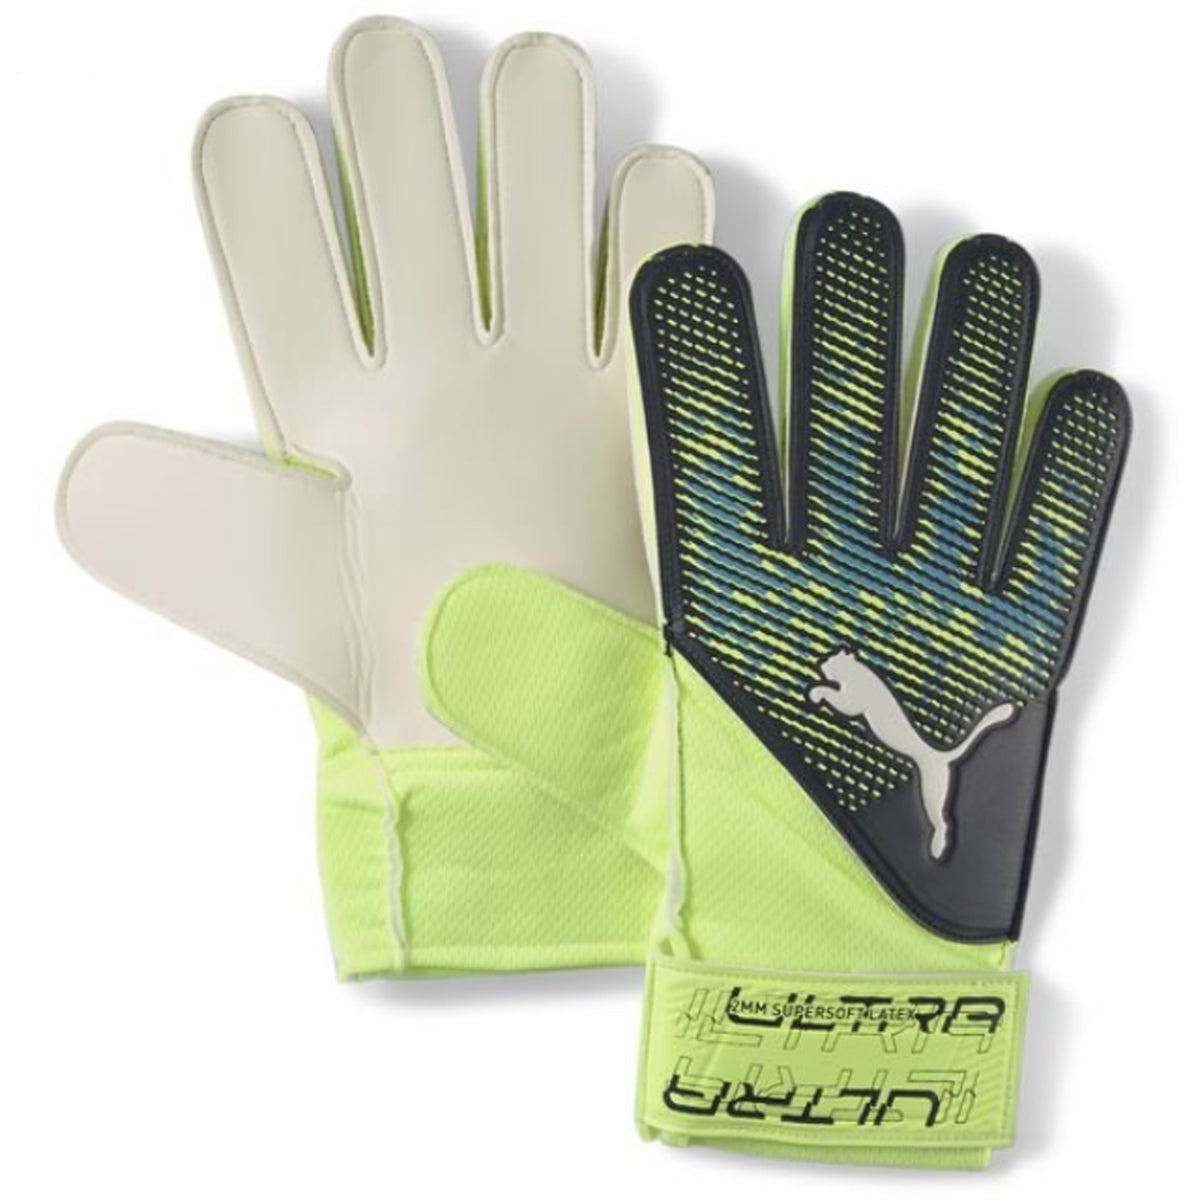 Puma ULTRA Grip 4 RC Goalkeeper Gloves: Fizzy Light